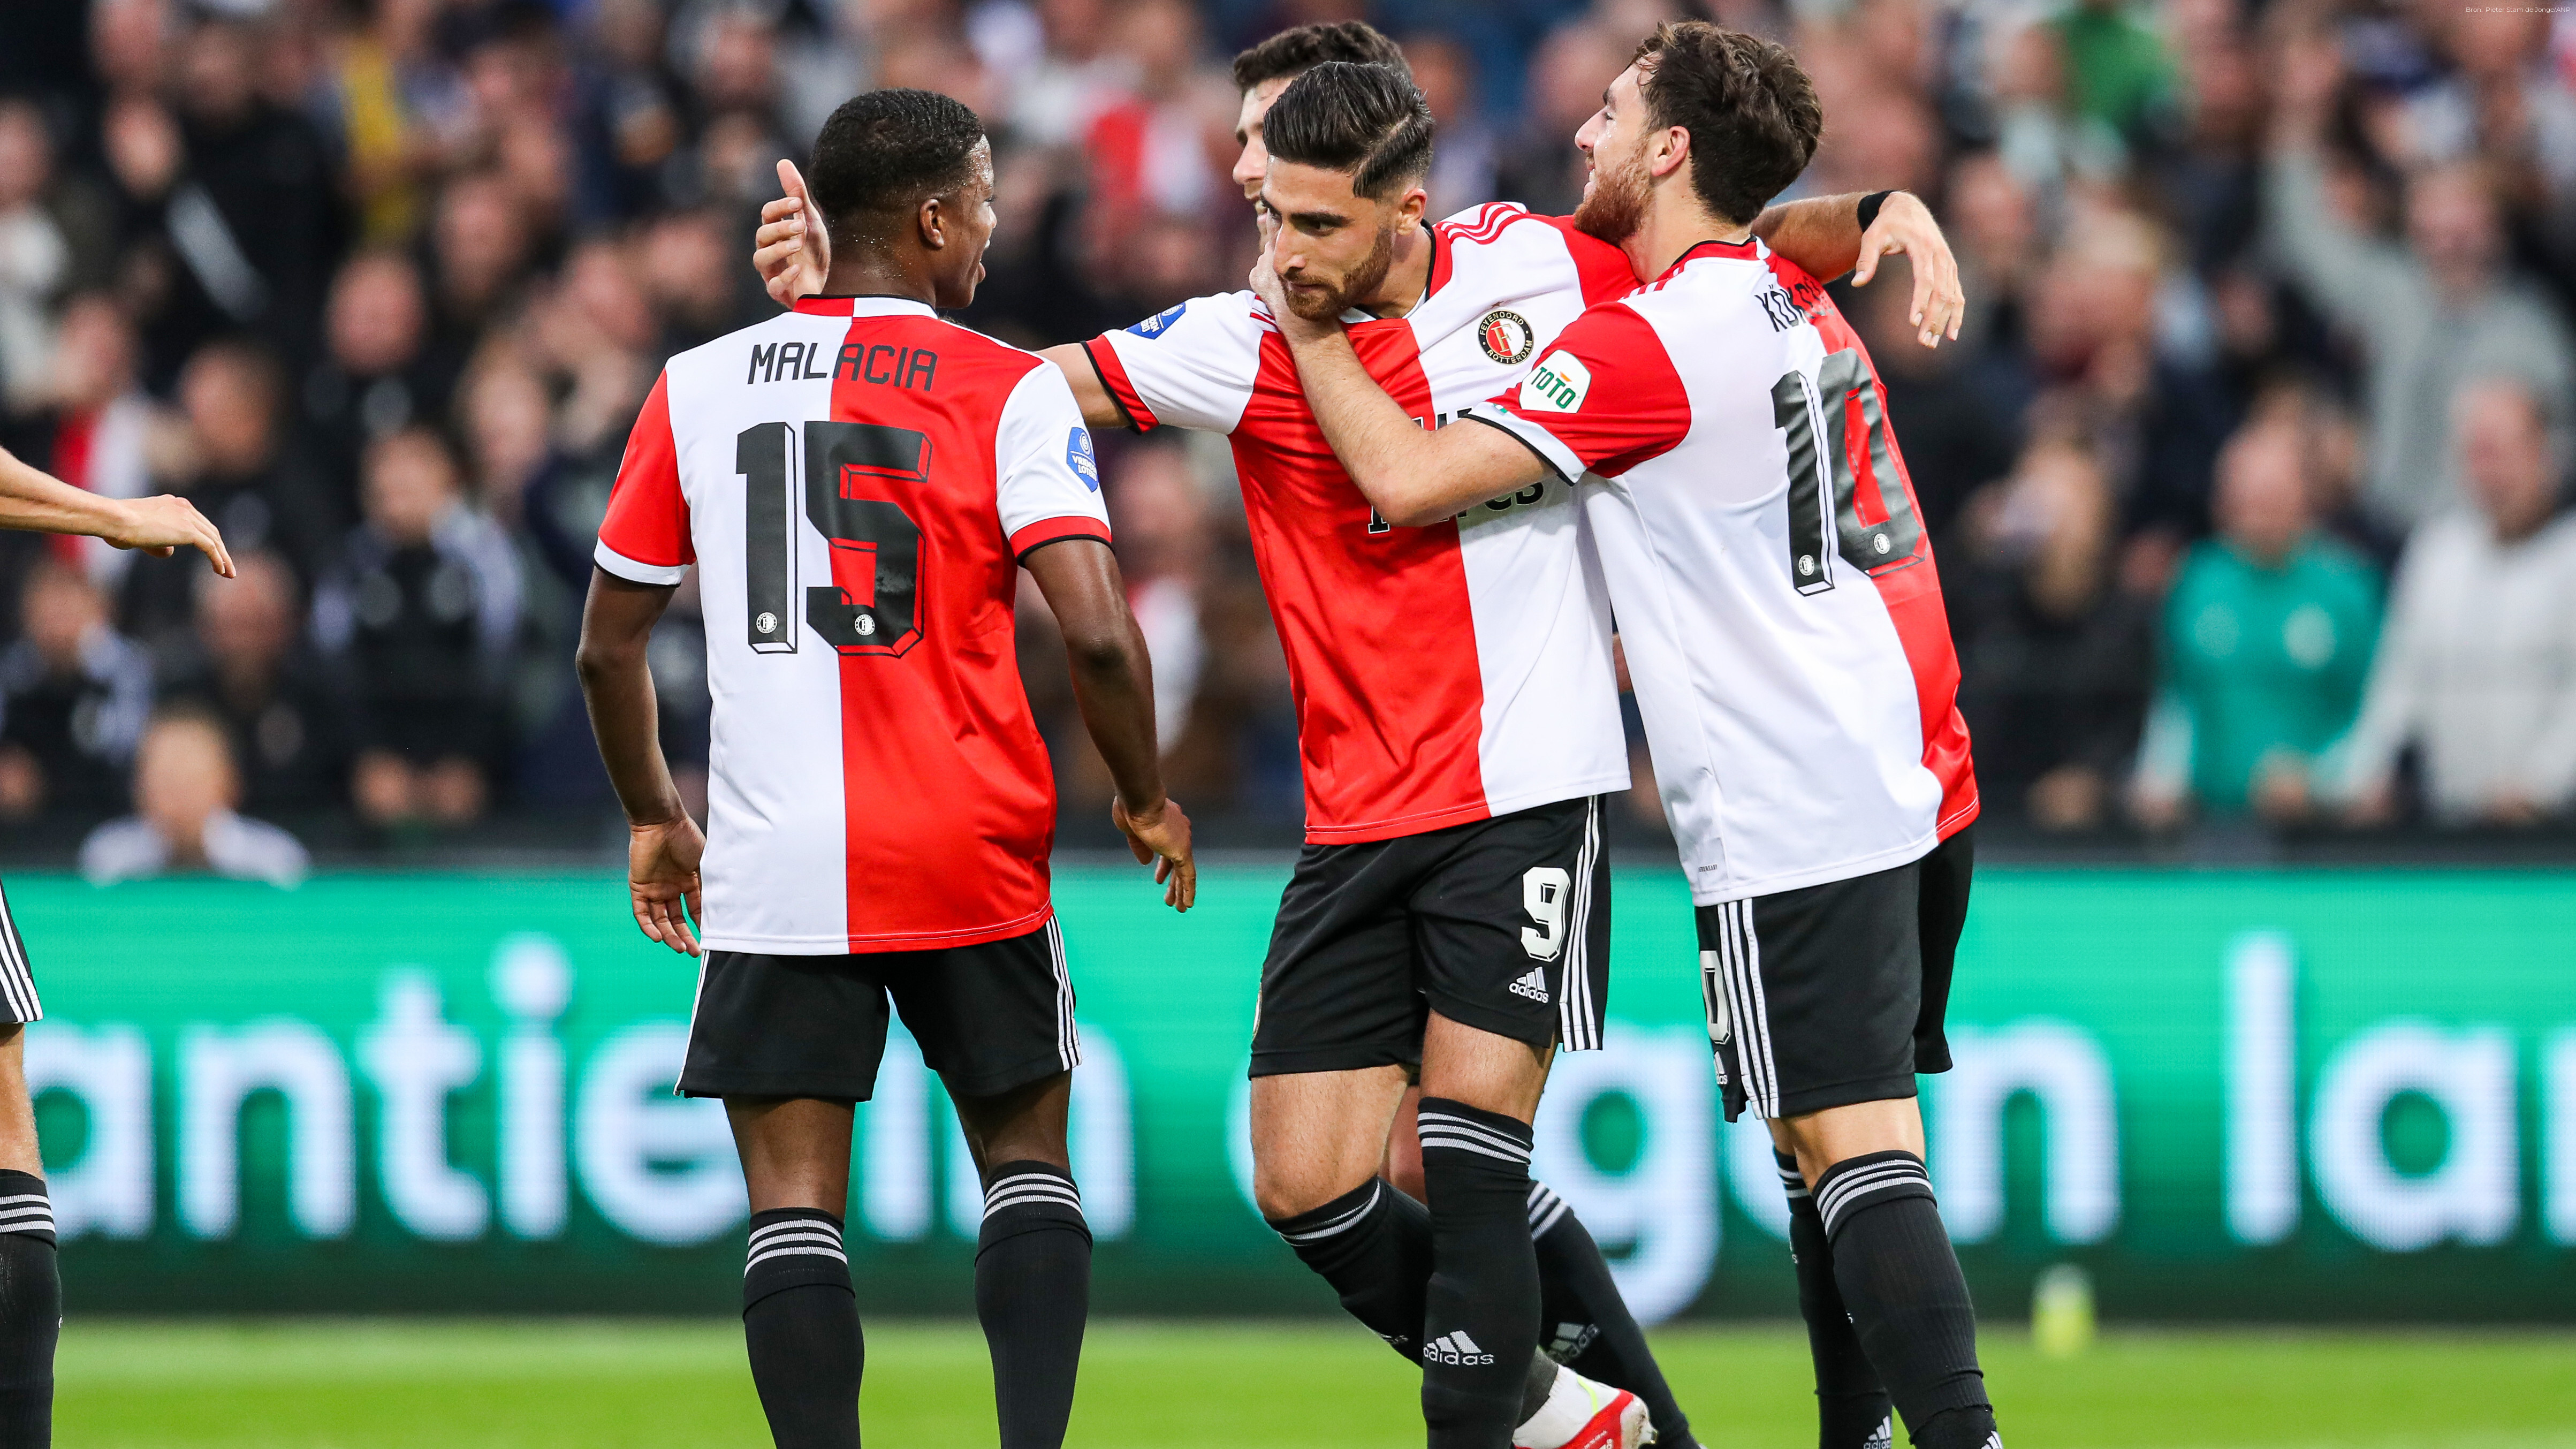 Reorganiseren scheidsrechter Geleidbaarheid Feyenoord - Go Ahead Eagles live op tv en online (Eredivisie)